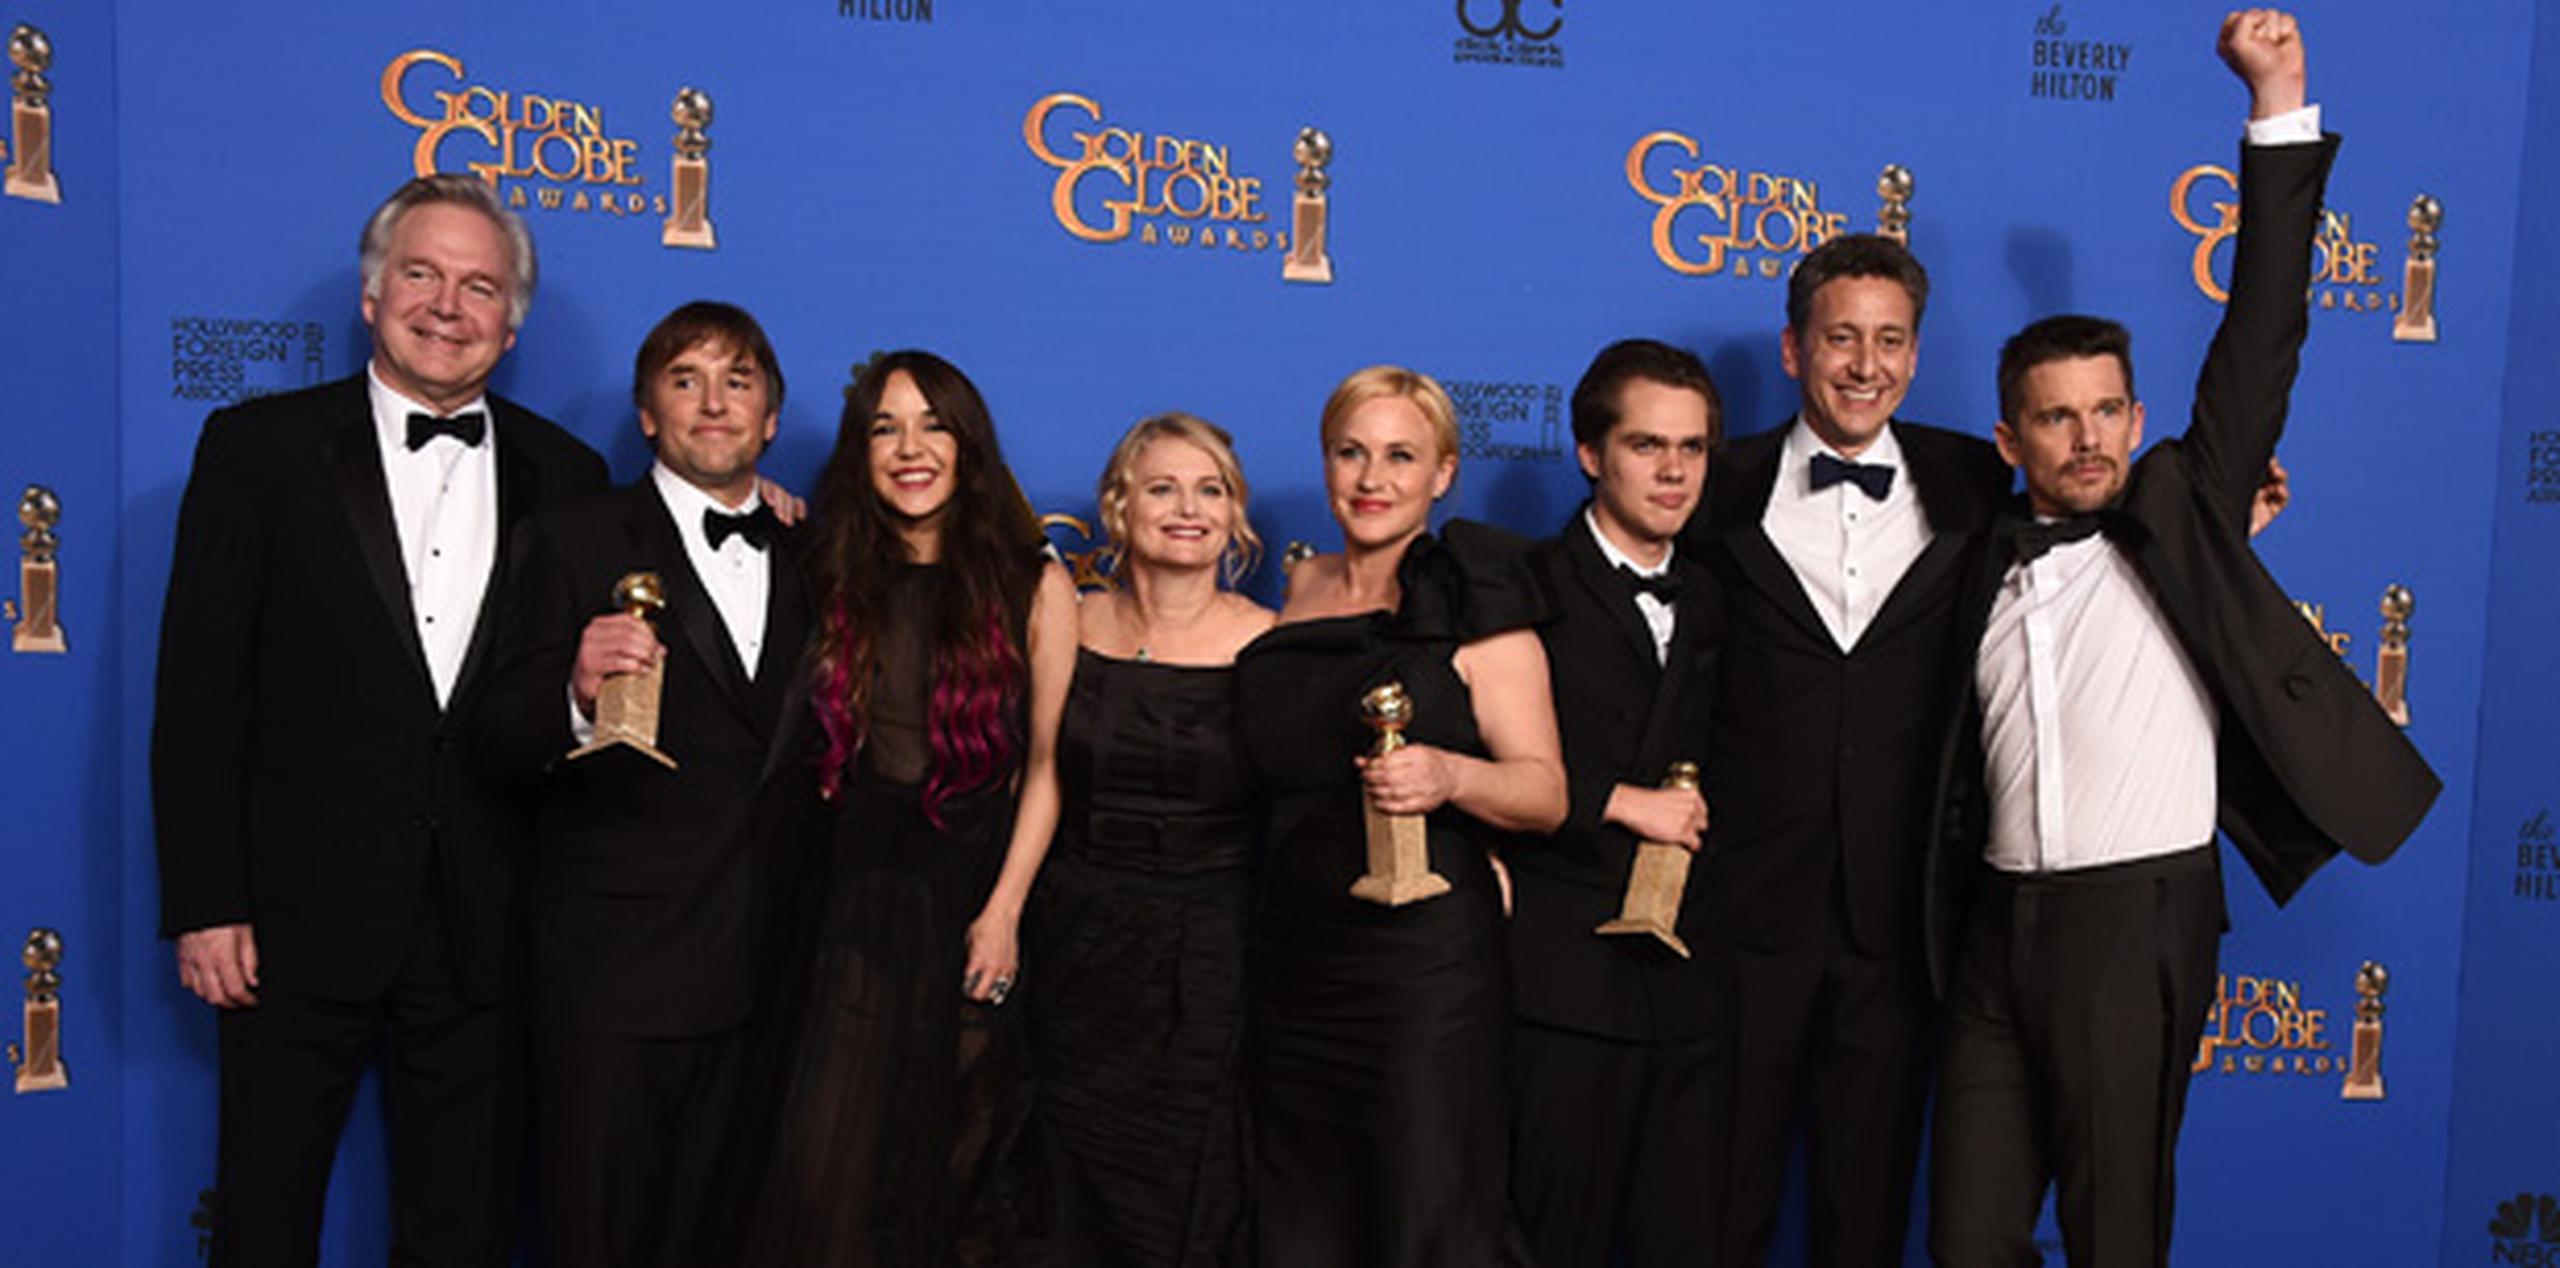 Parte del elenco y equipo de producción de "Boyhood" celebra la victoria del filme en los Globos de Oro, donde obtuvo los premios al mejor drama, mejor actriz secundaria, para Patricia Arquette, y mejor director, para Richard Linklater. (AP)